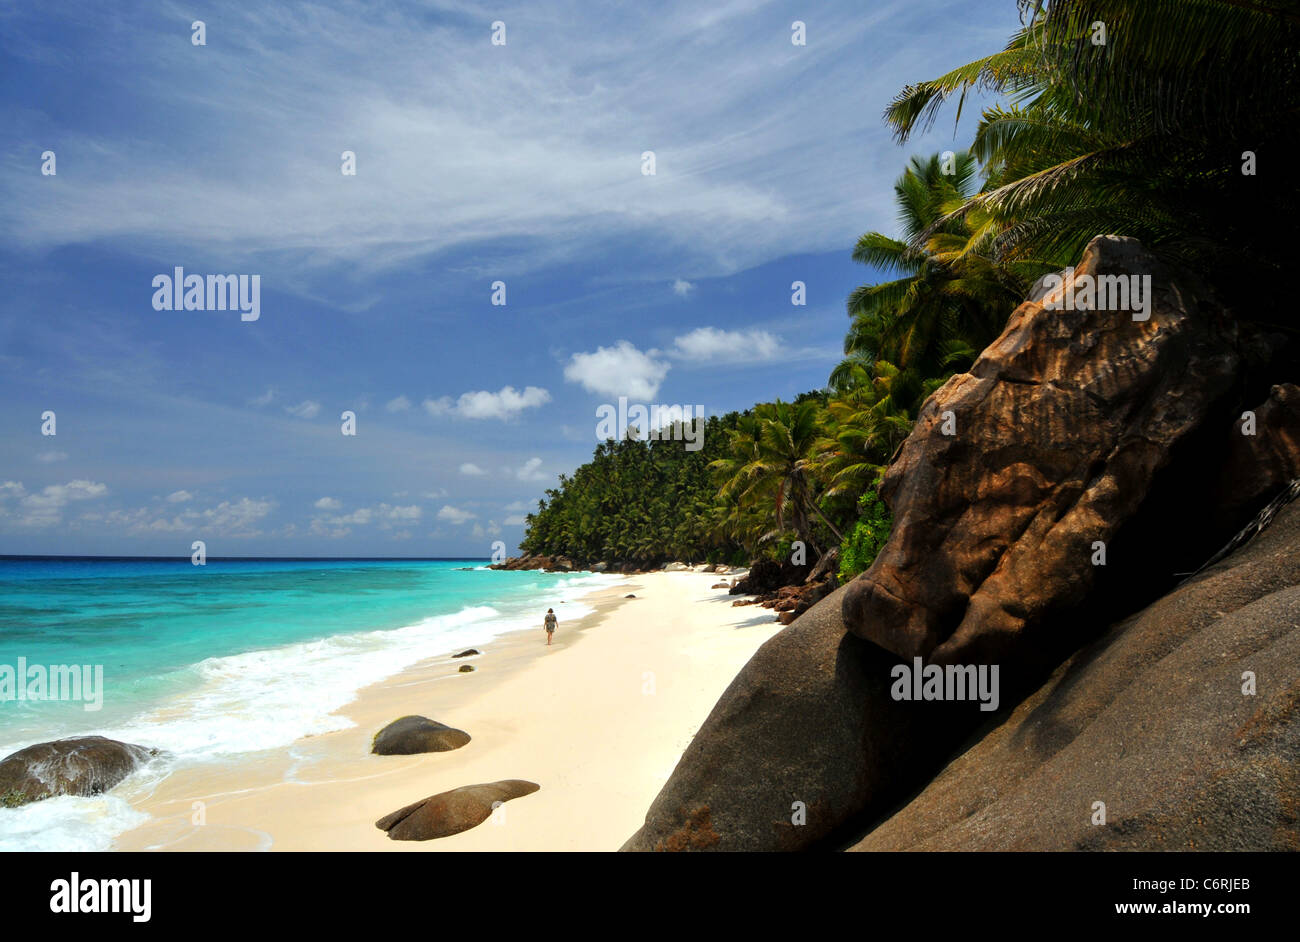 Anse Victorin, répertorié comme l'une des plus belles plages du monde, Milan Holiday Hotel, un centre de vacances, l'île des Seychelles. Banque D'Images